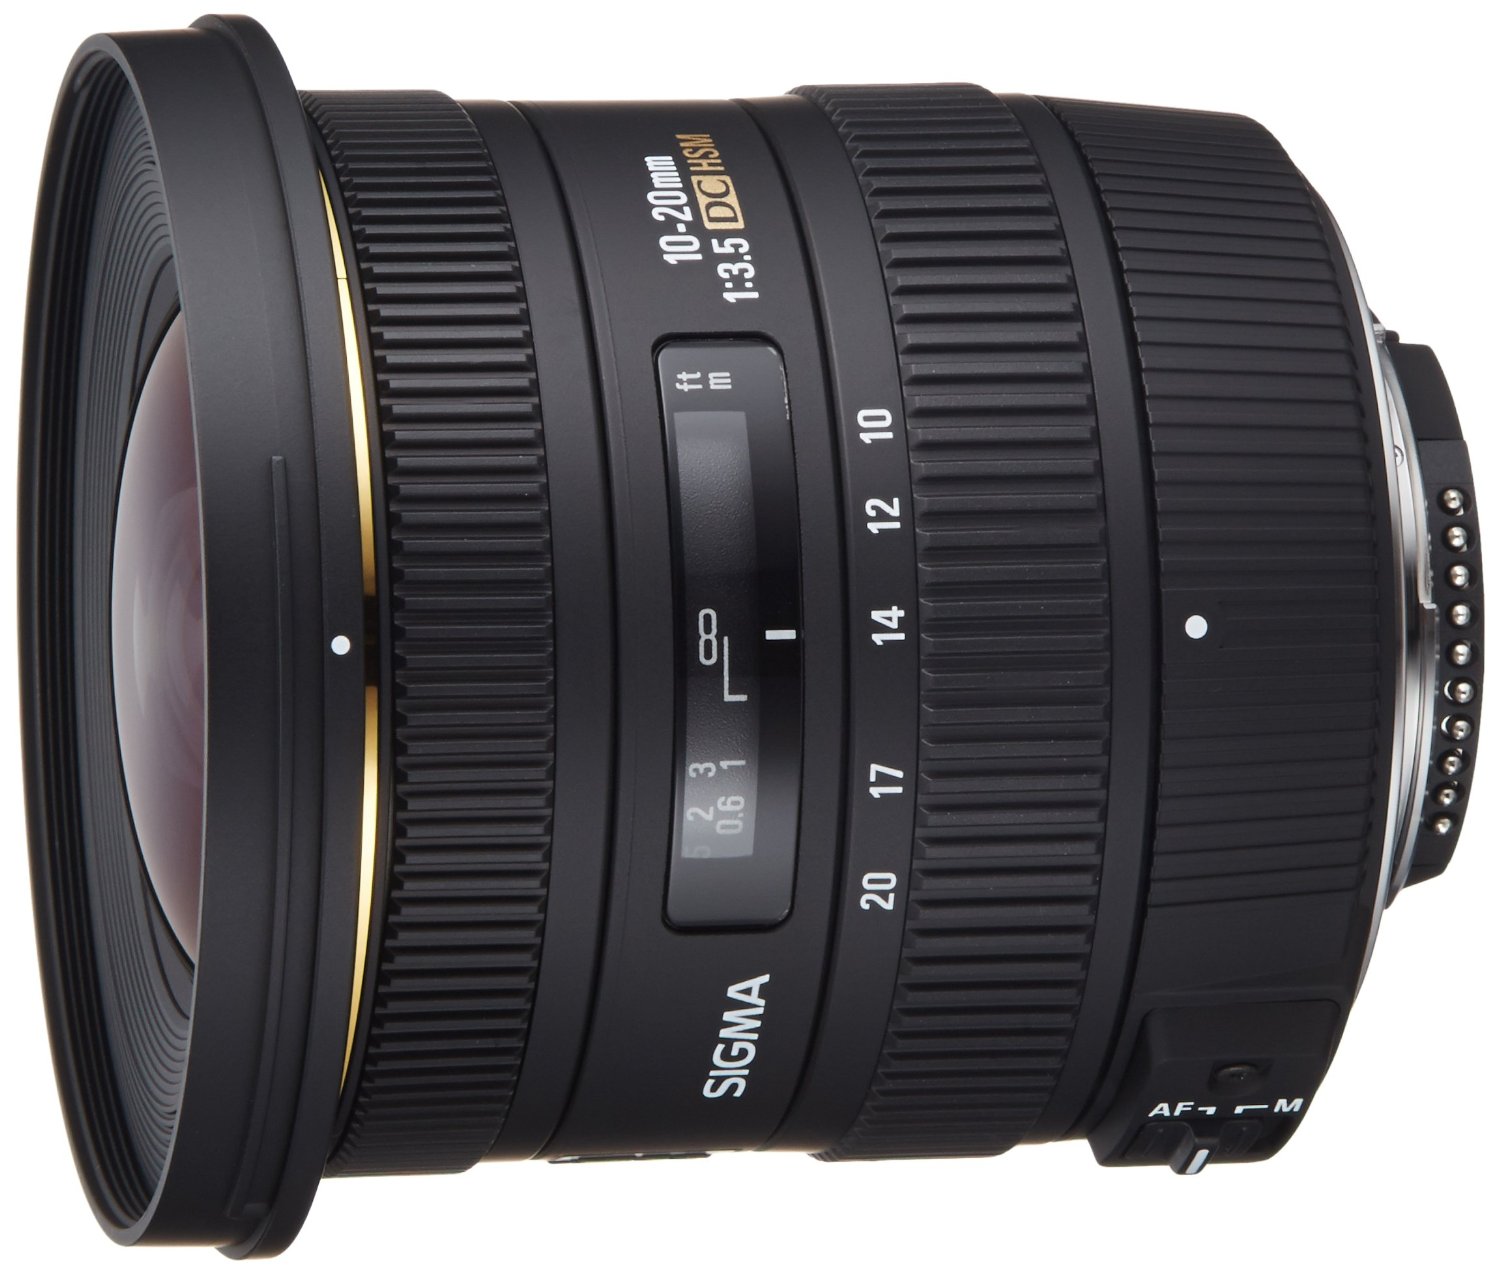 SIGMA 10-20mm f / 3.5 EX DC HSM ELD SLD objectif super grand Angle asphérique pour appareils photo reflex numériques Nikon